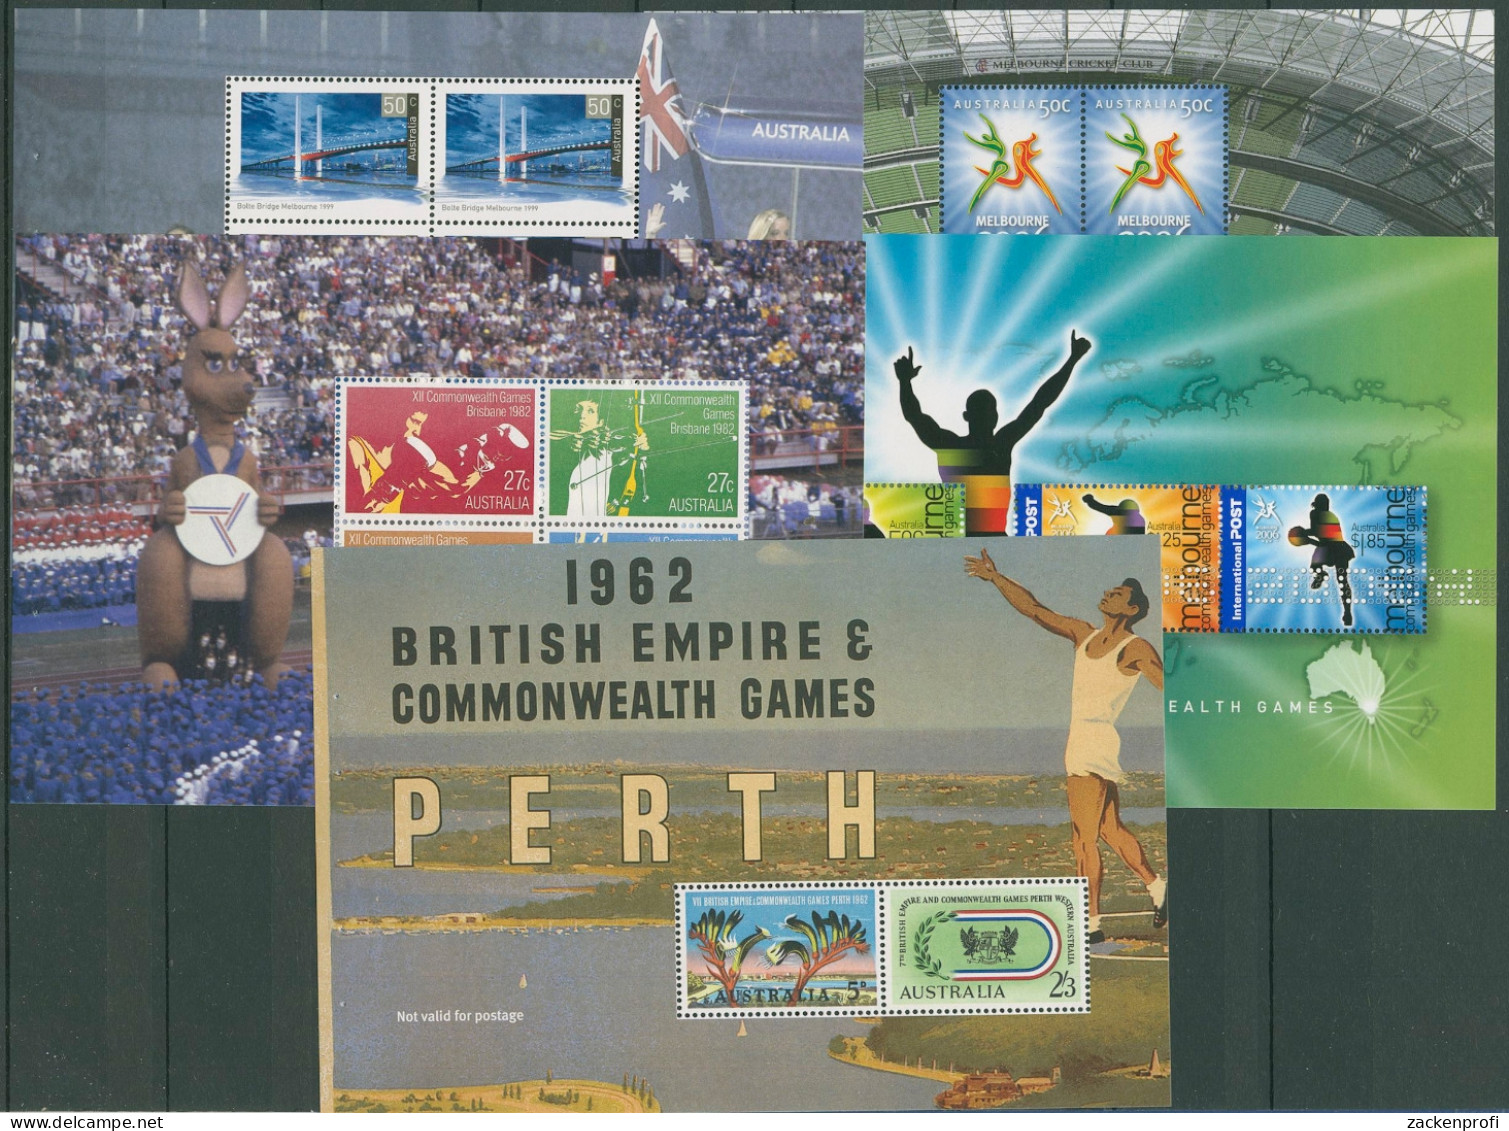 Australien 2006 Commonwealth Games MH 226 Postfrisch (C29644) - Libretti